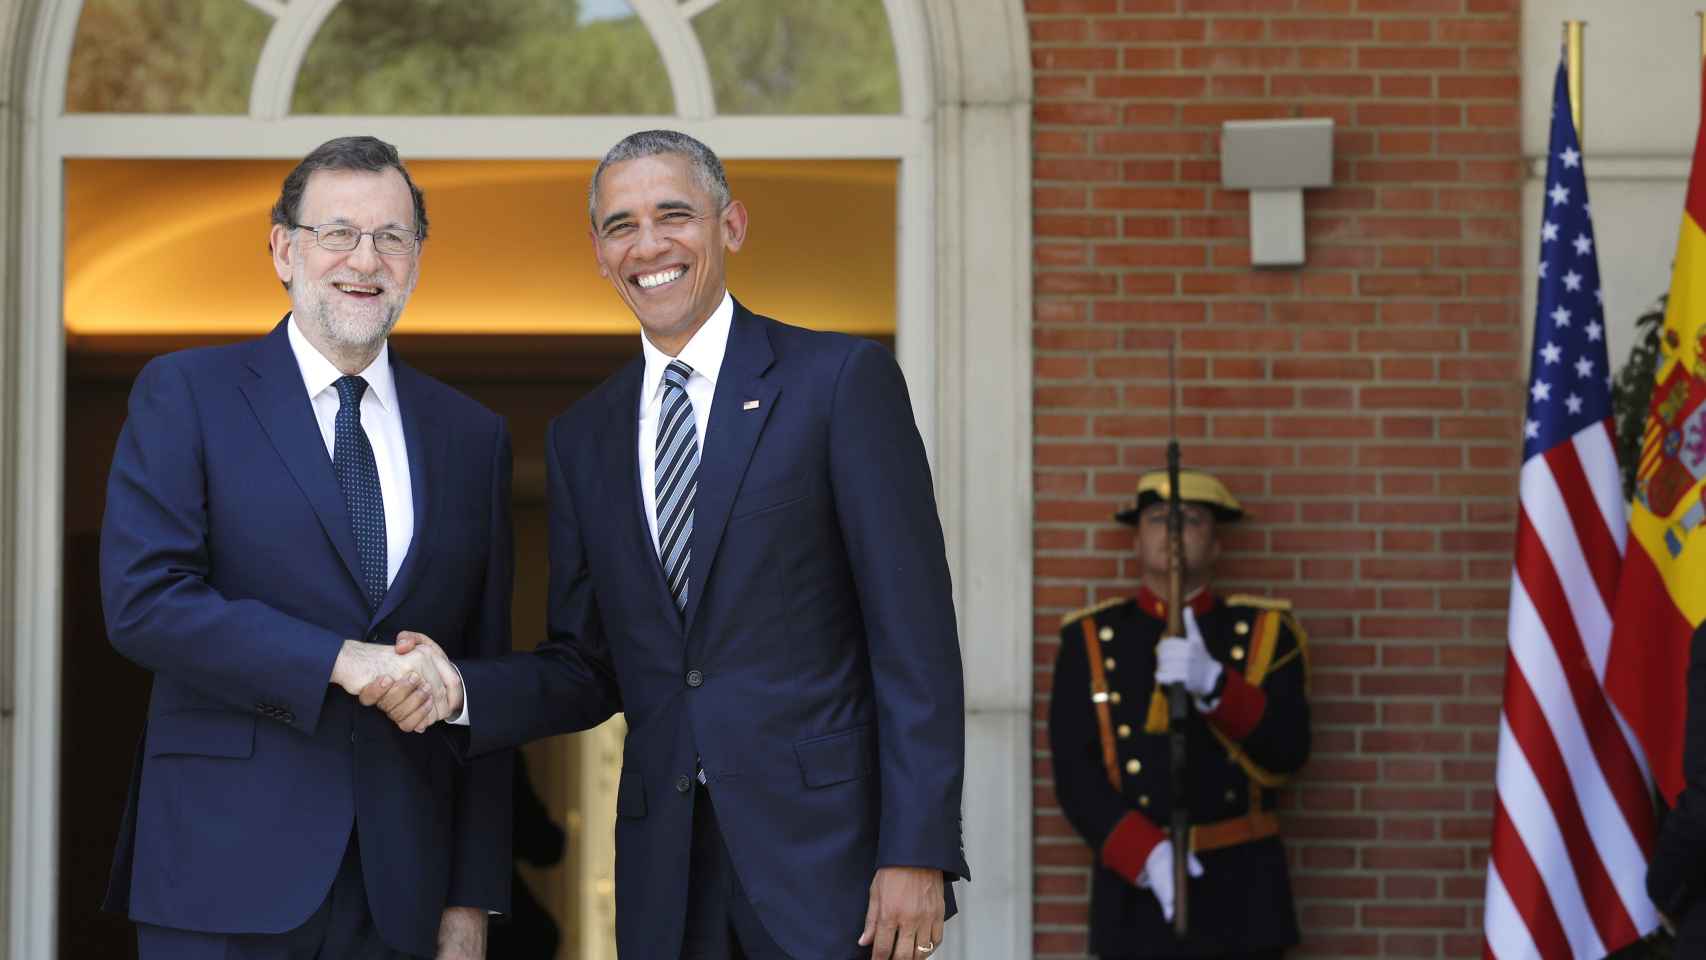 Saludo entre ambos presidentes en Moncloa.